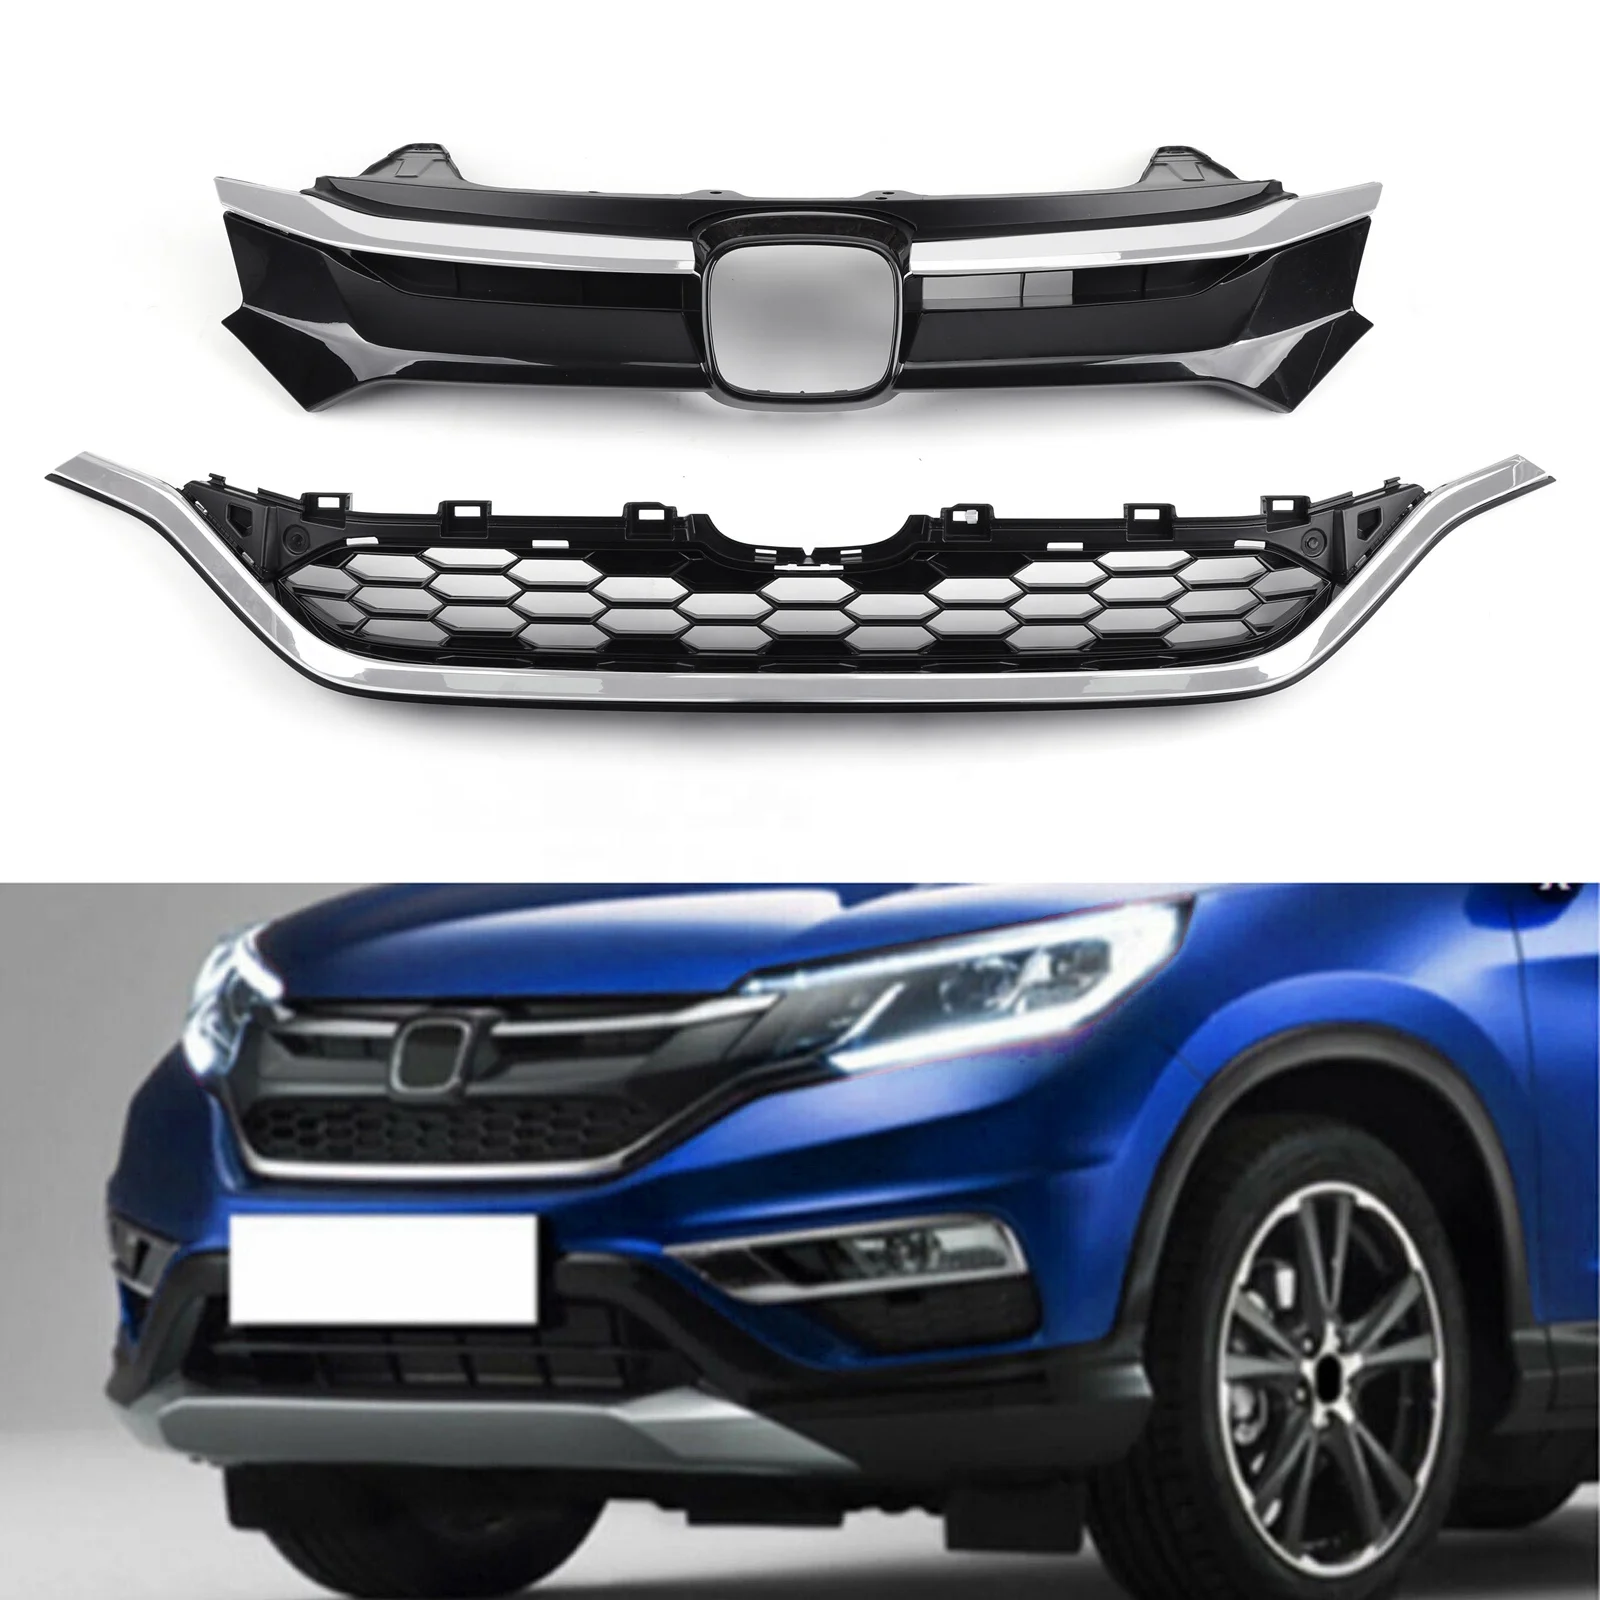 

Areyourshop Car Front Bumper Cover Grid Upper Trim + Lower Grille For Honda CRV 2015 2016, Black